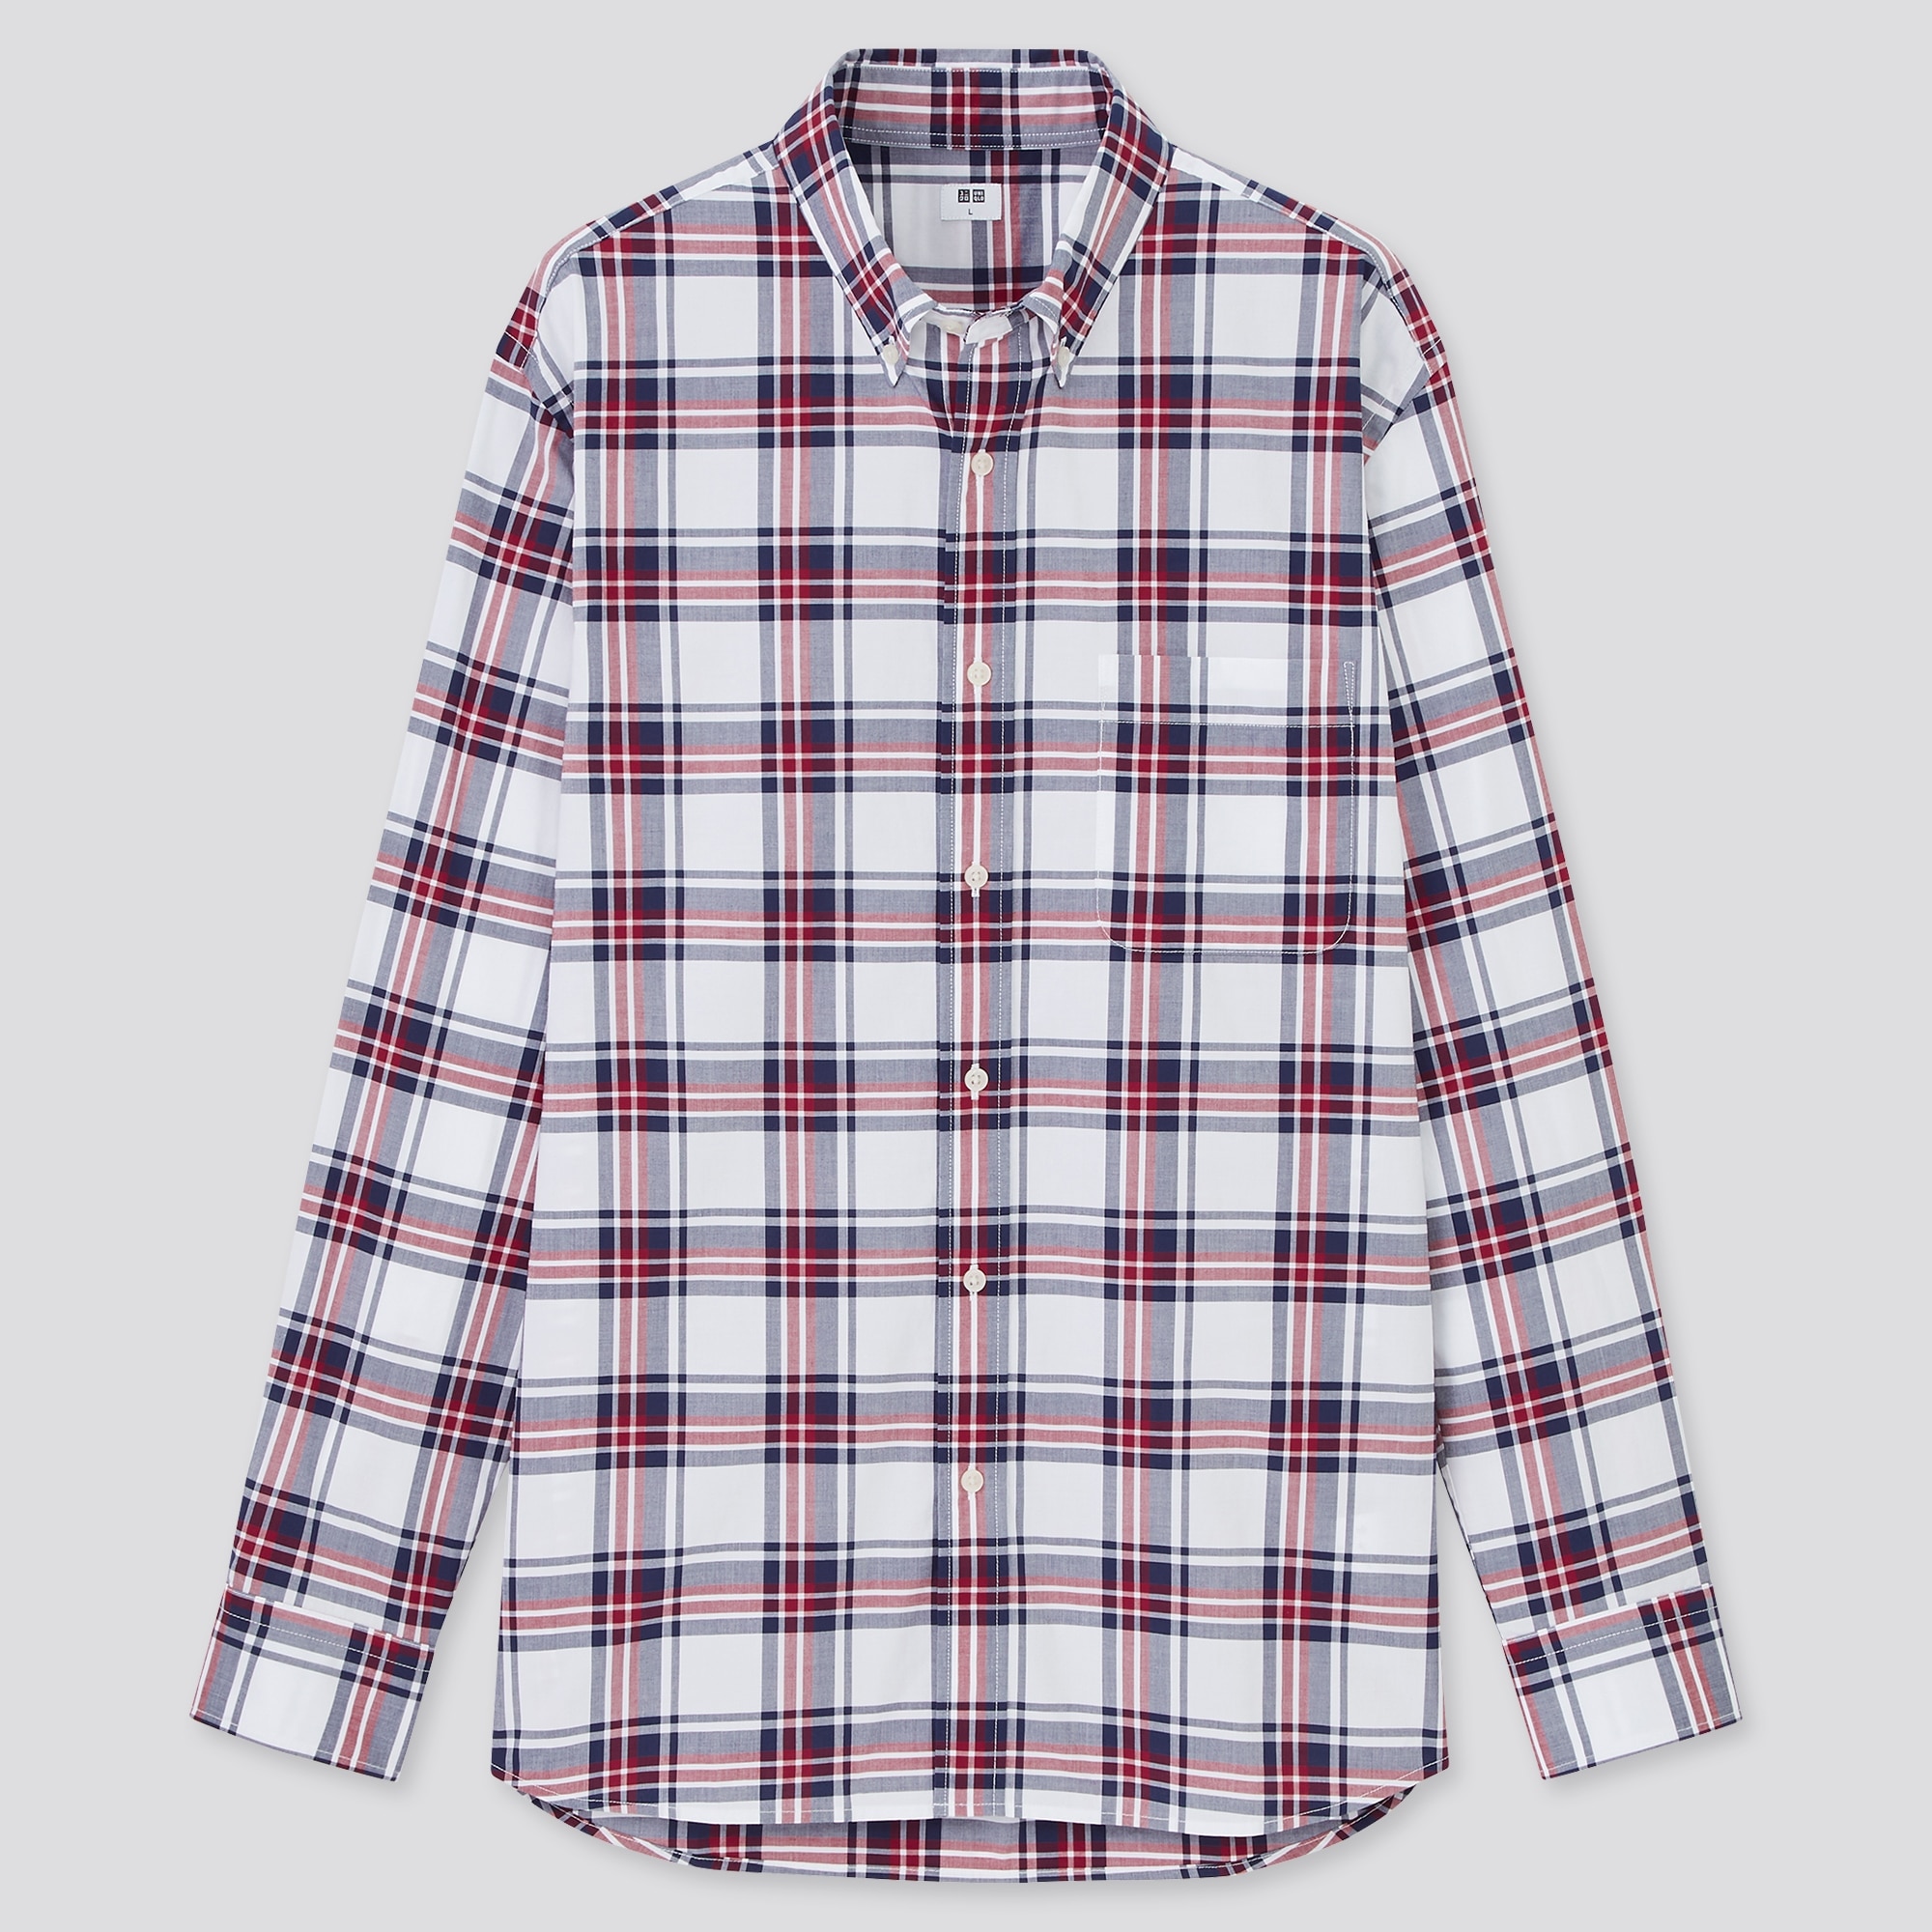 チェックシャツ メンズ 冬の関連商品 ユニクロ